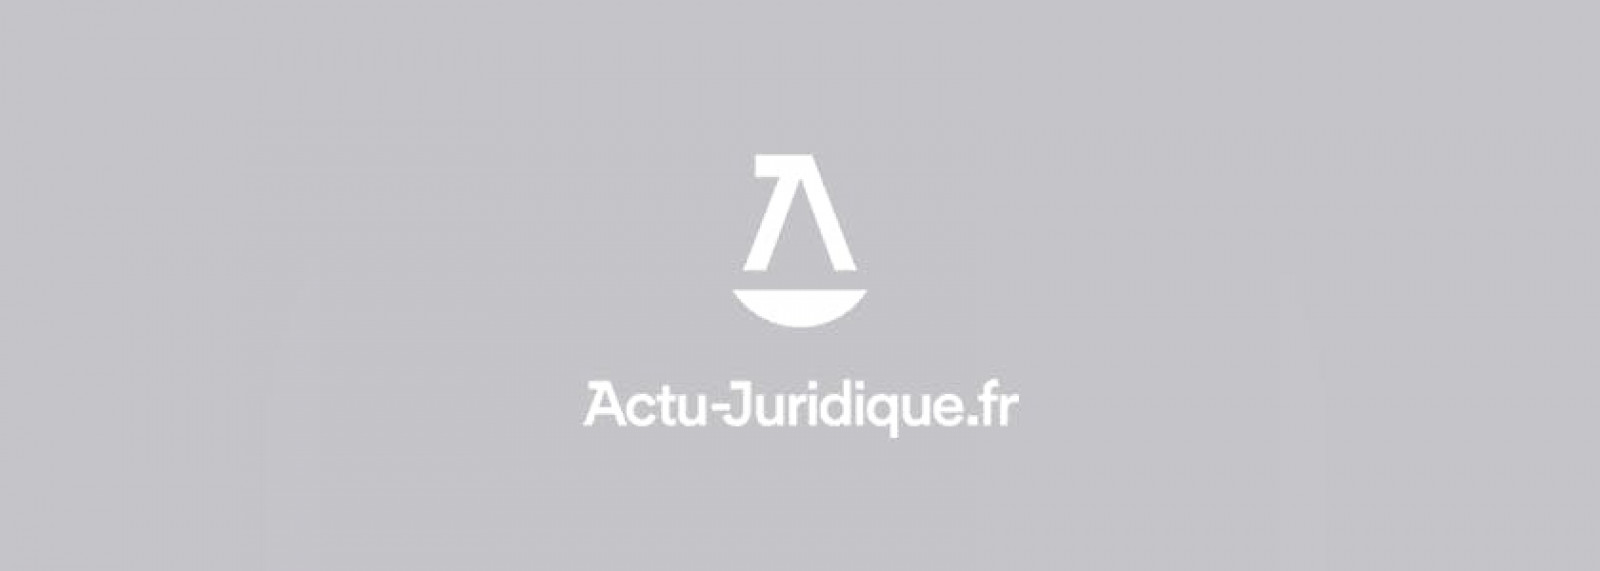 Israël à Eurosatory, ou la "justice éparpillée", par Valérie DERVIEUX dans ACTU JURIDIQUE - Syndicat Unité Magistrats SNM FO